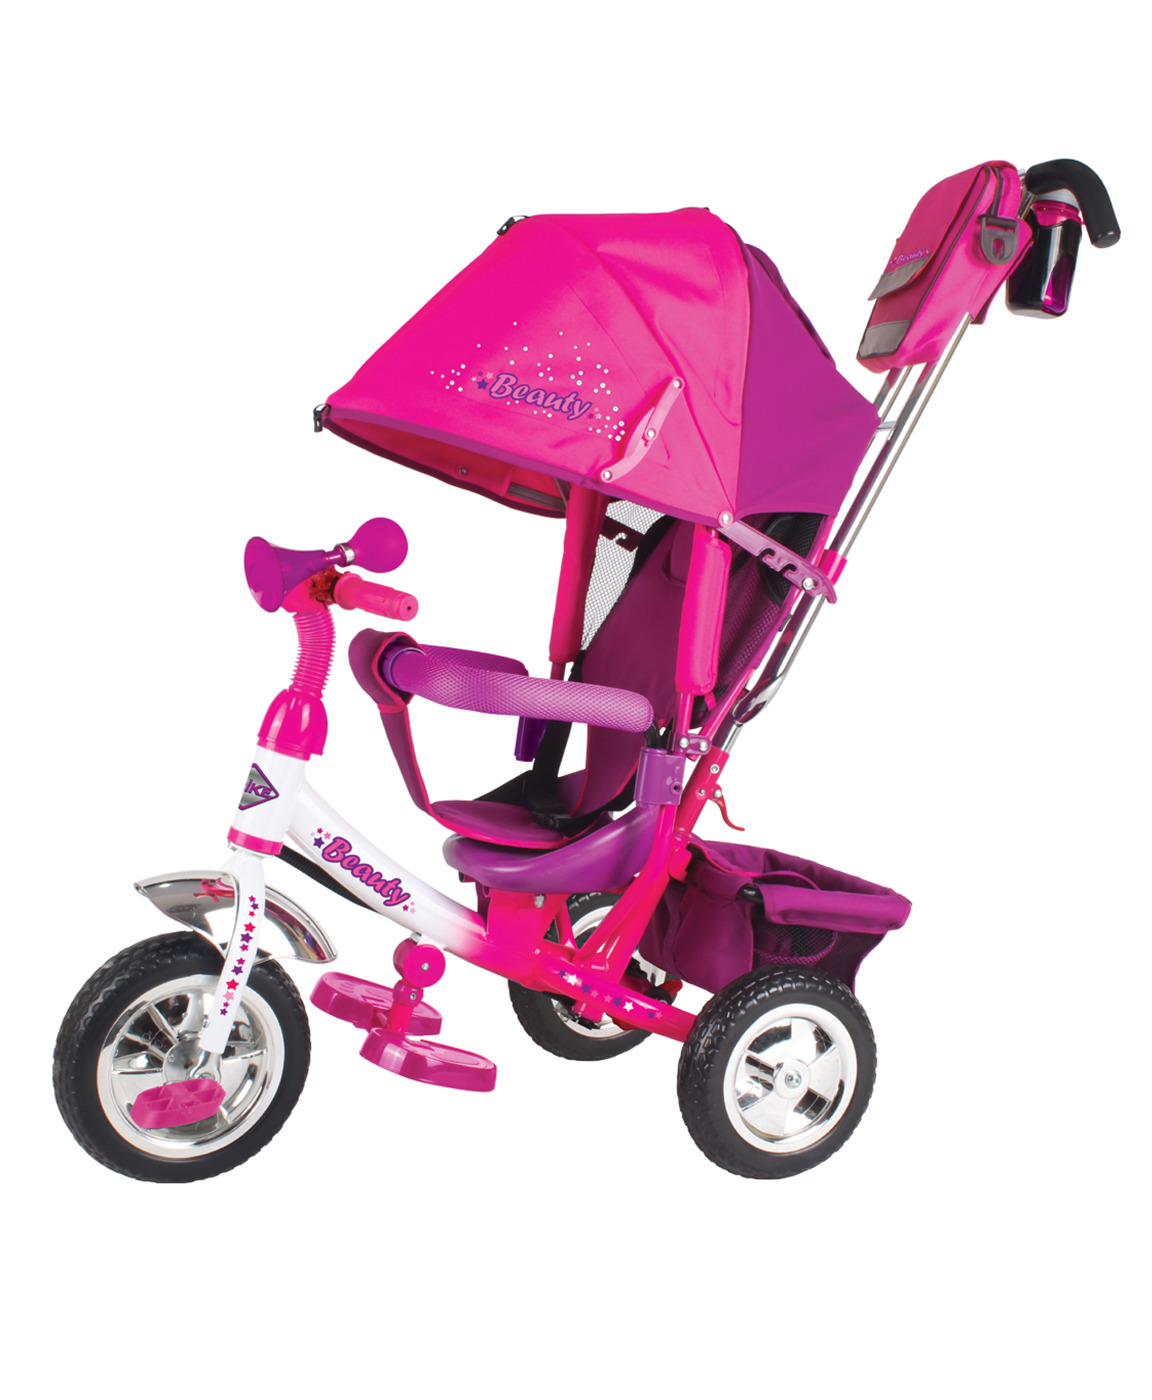 Купить детский велосипед в ростове на дону. Трехколесный велосипед Beauty ba2. Велосипед Beauty ba2 Trike. Велосипед трайк Тревел. Детский велосипед ТТ трайк.